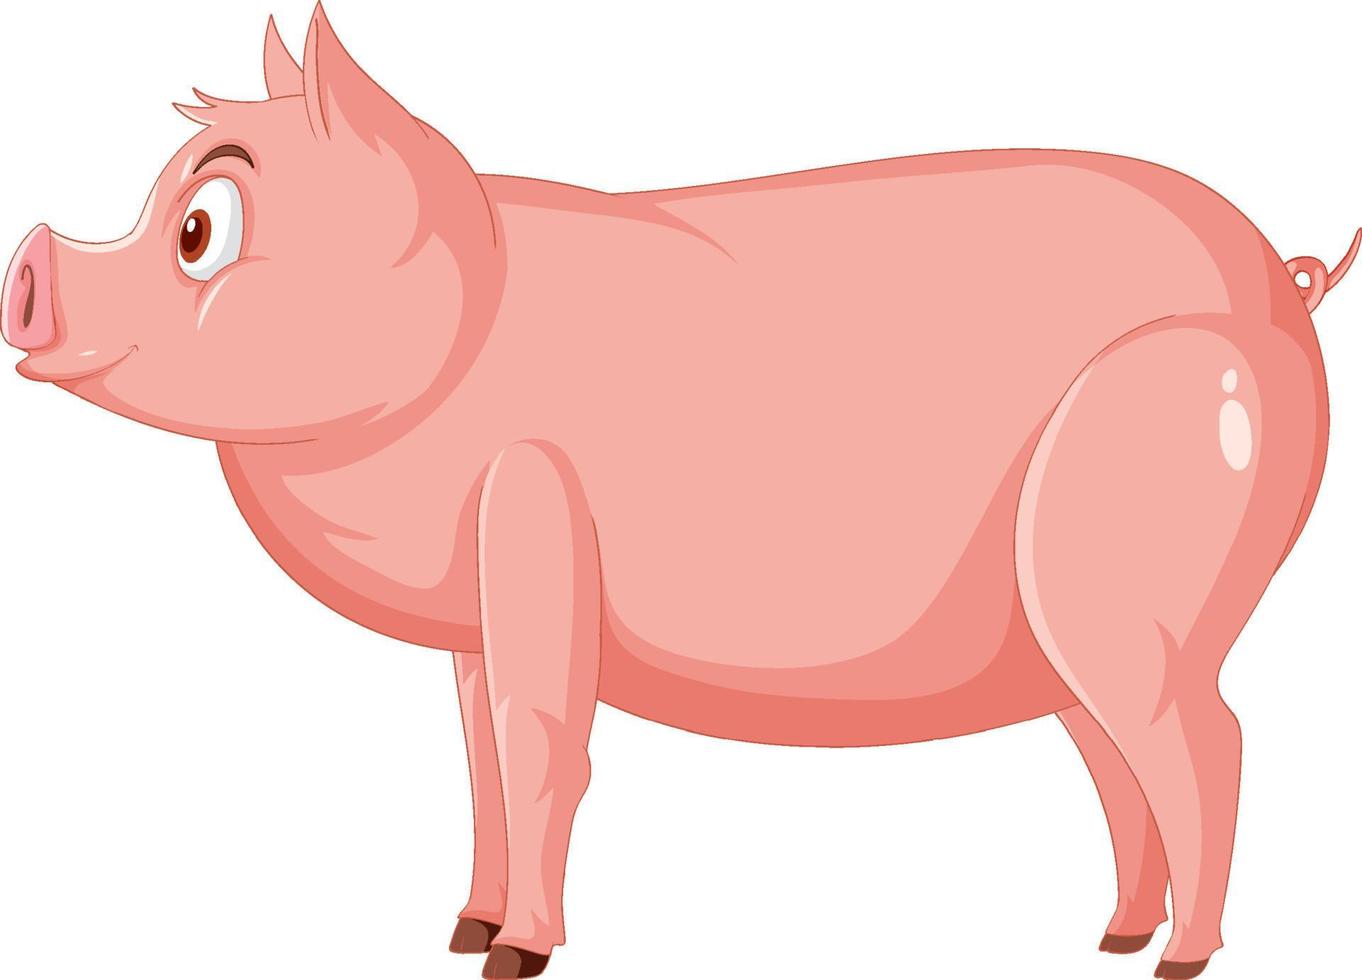 vue latérale du personnage de dessin animé de cochon vecteur